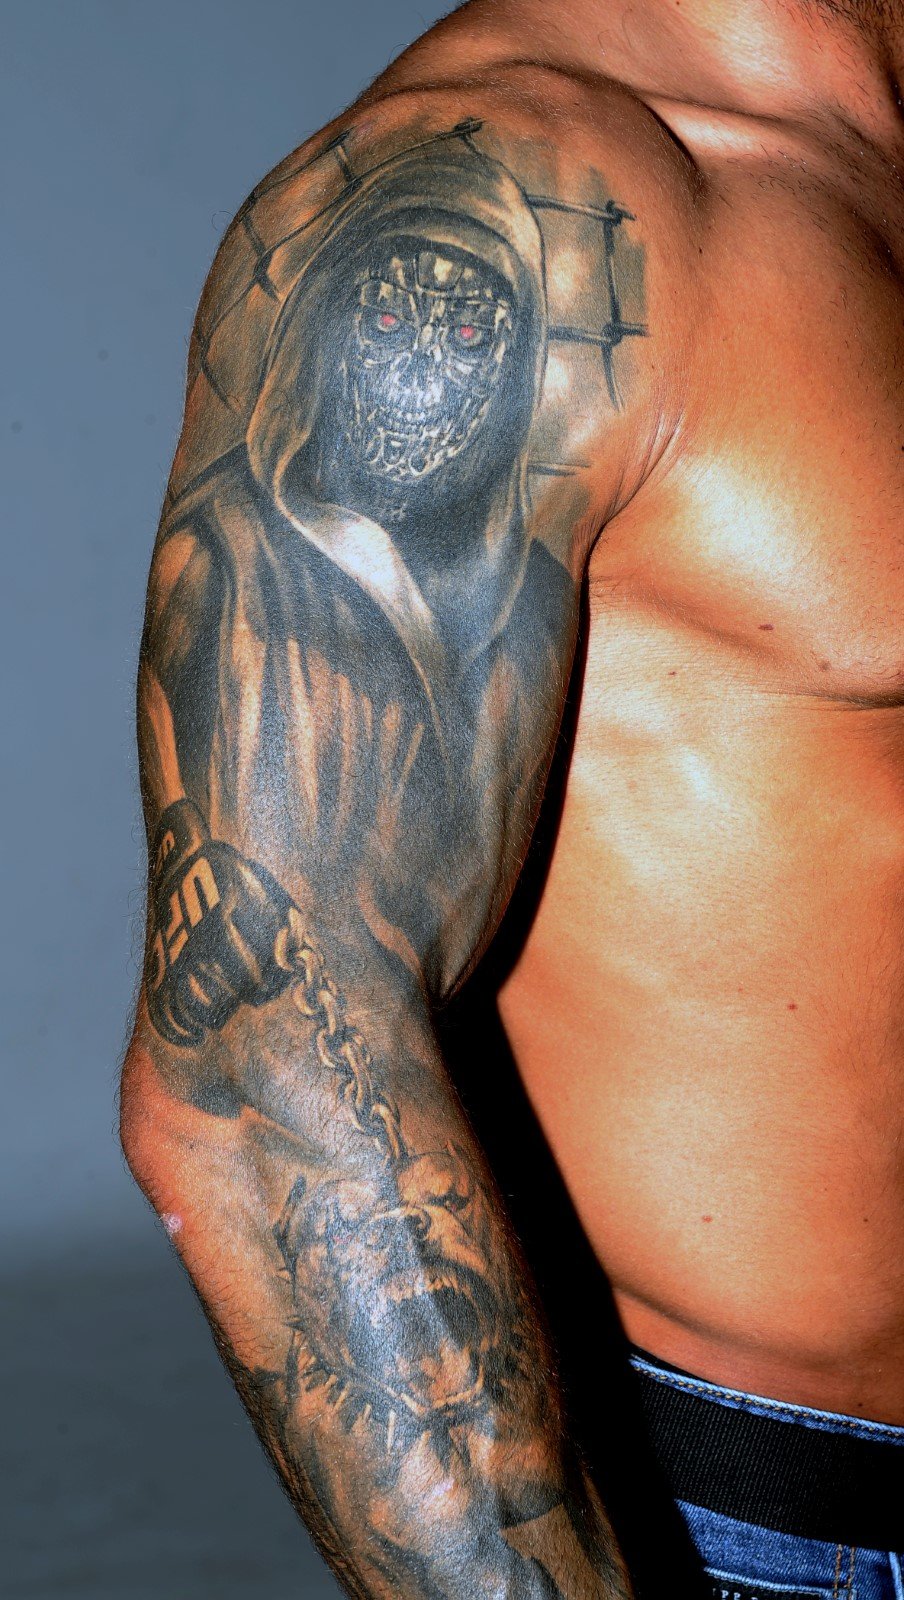 Karlos Vémola má na sobě mnoho tetování, každé z nich má svůj jedinečný příběh